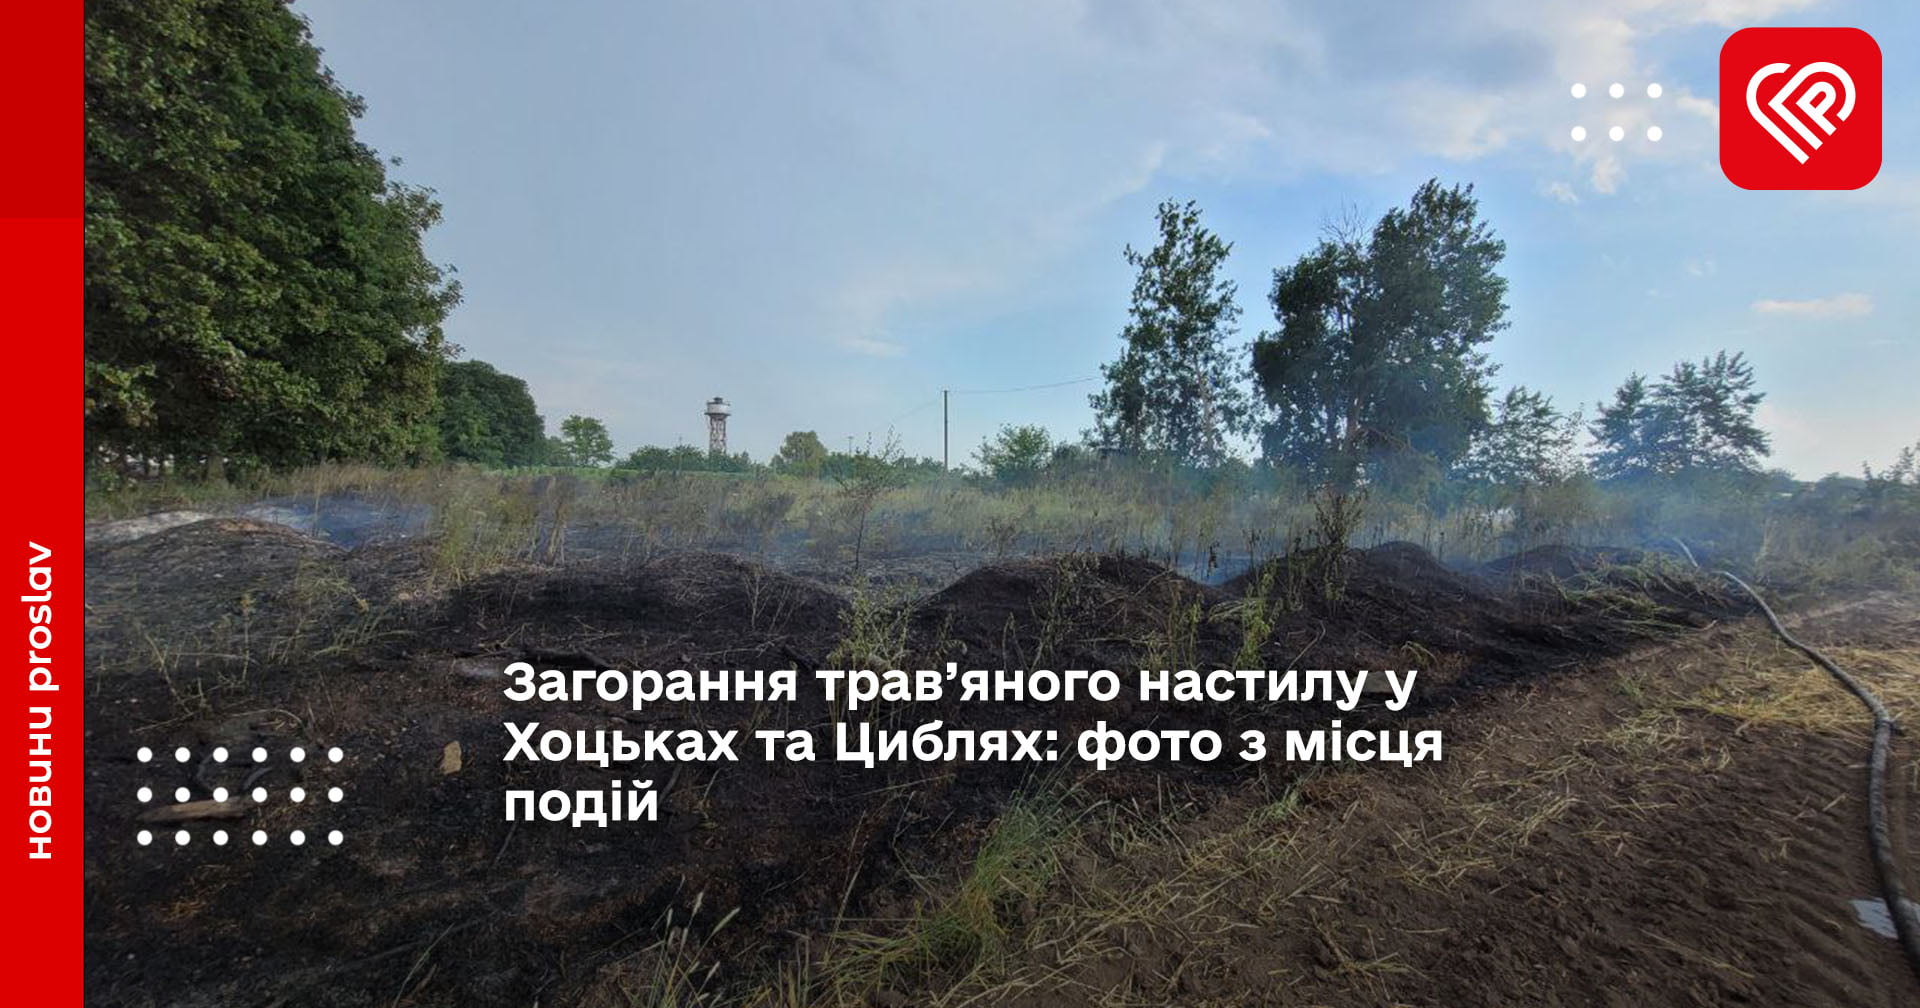 Загорання трав’яного настилу у Хоцьках та Циблях: фото з місця подій